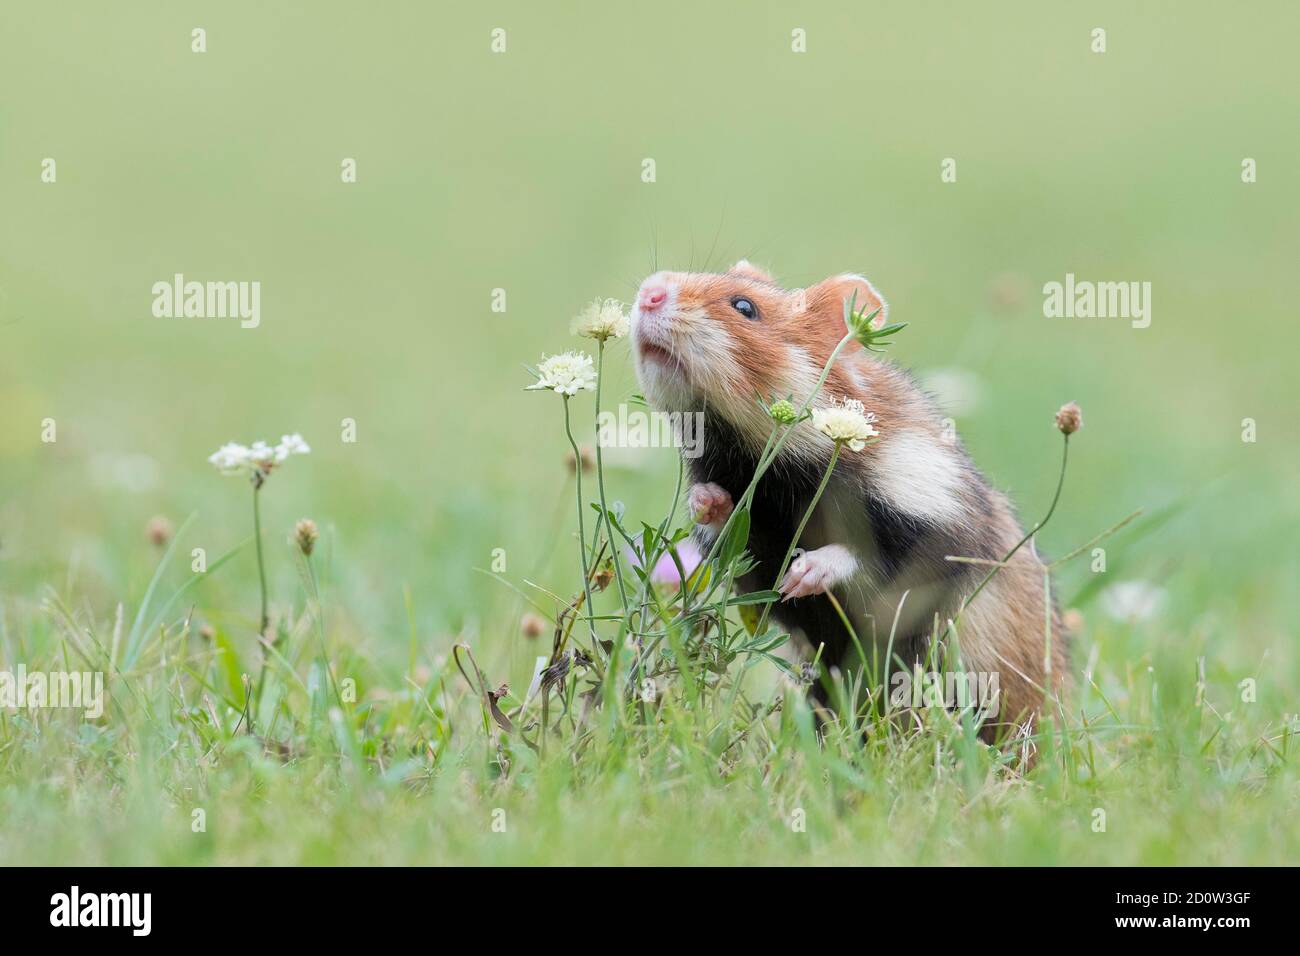 European hamster (Cricetus cricetus) sniffs a plant, Vienna, Austria, Europe Stock Photo